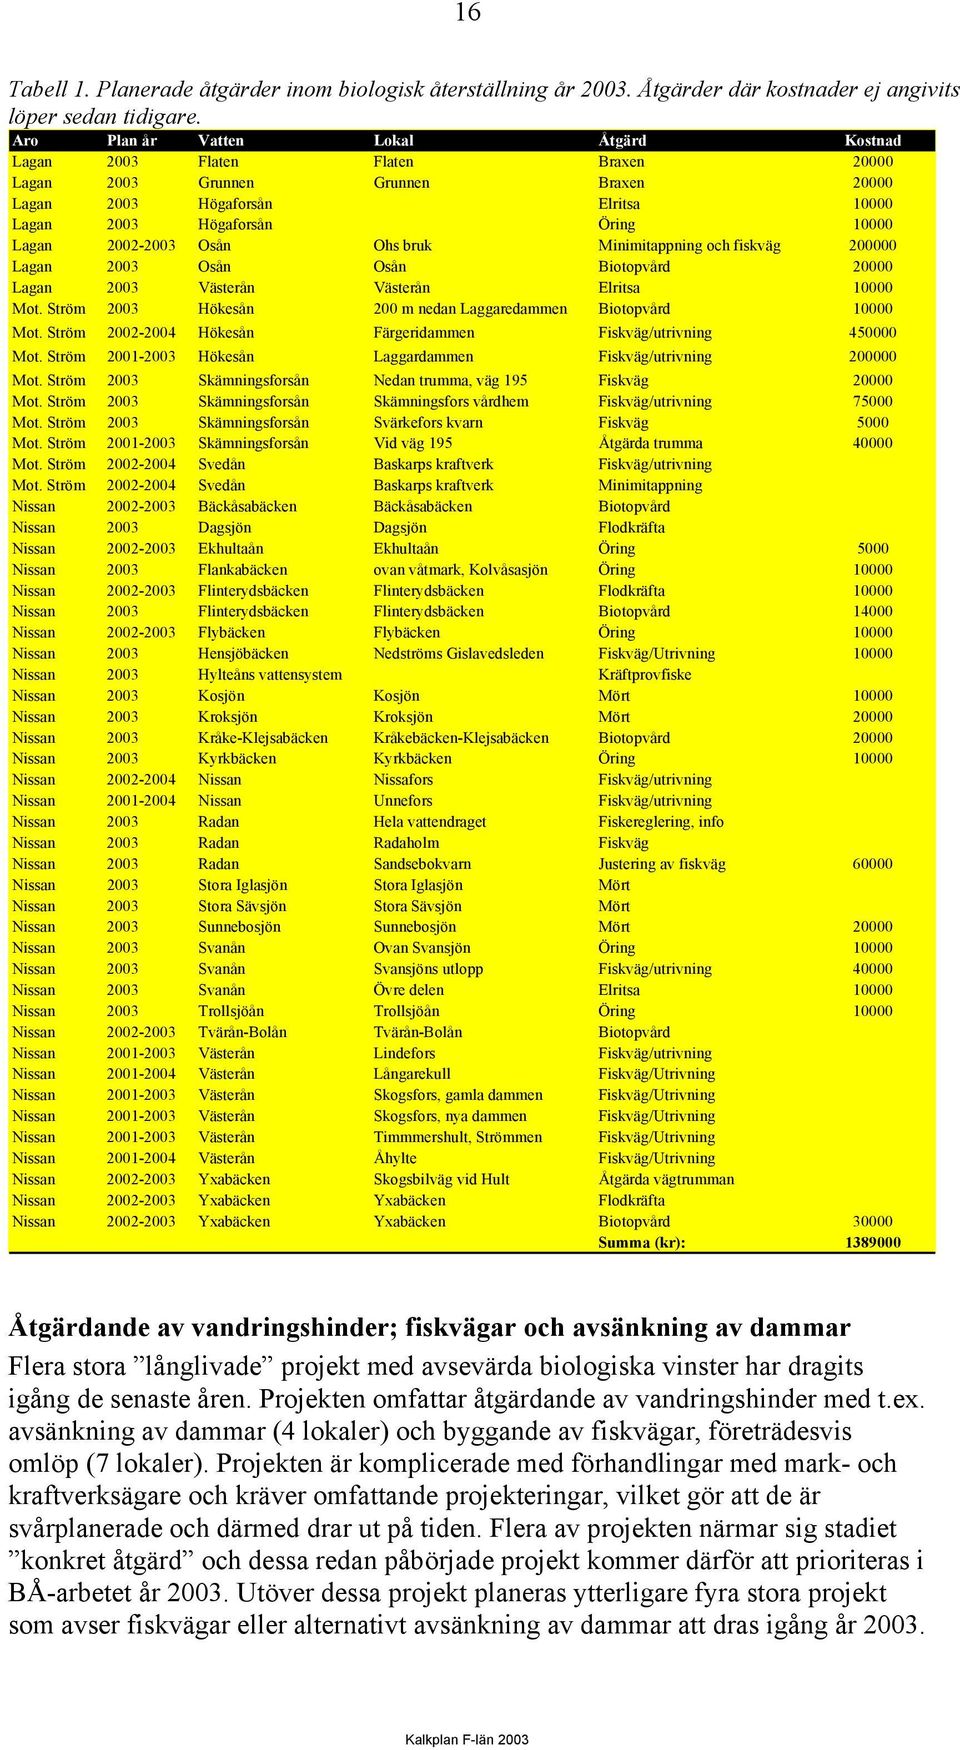 2002-2003 Osån Ohs bruk Minimitappning och fiskväg 200000 Lagan 2003 Osån Osån Biotopvård 20000 Lagan 2003 Västerån Västerån Elritsa 10000 Mot.